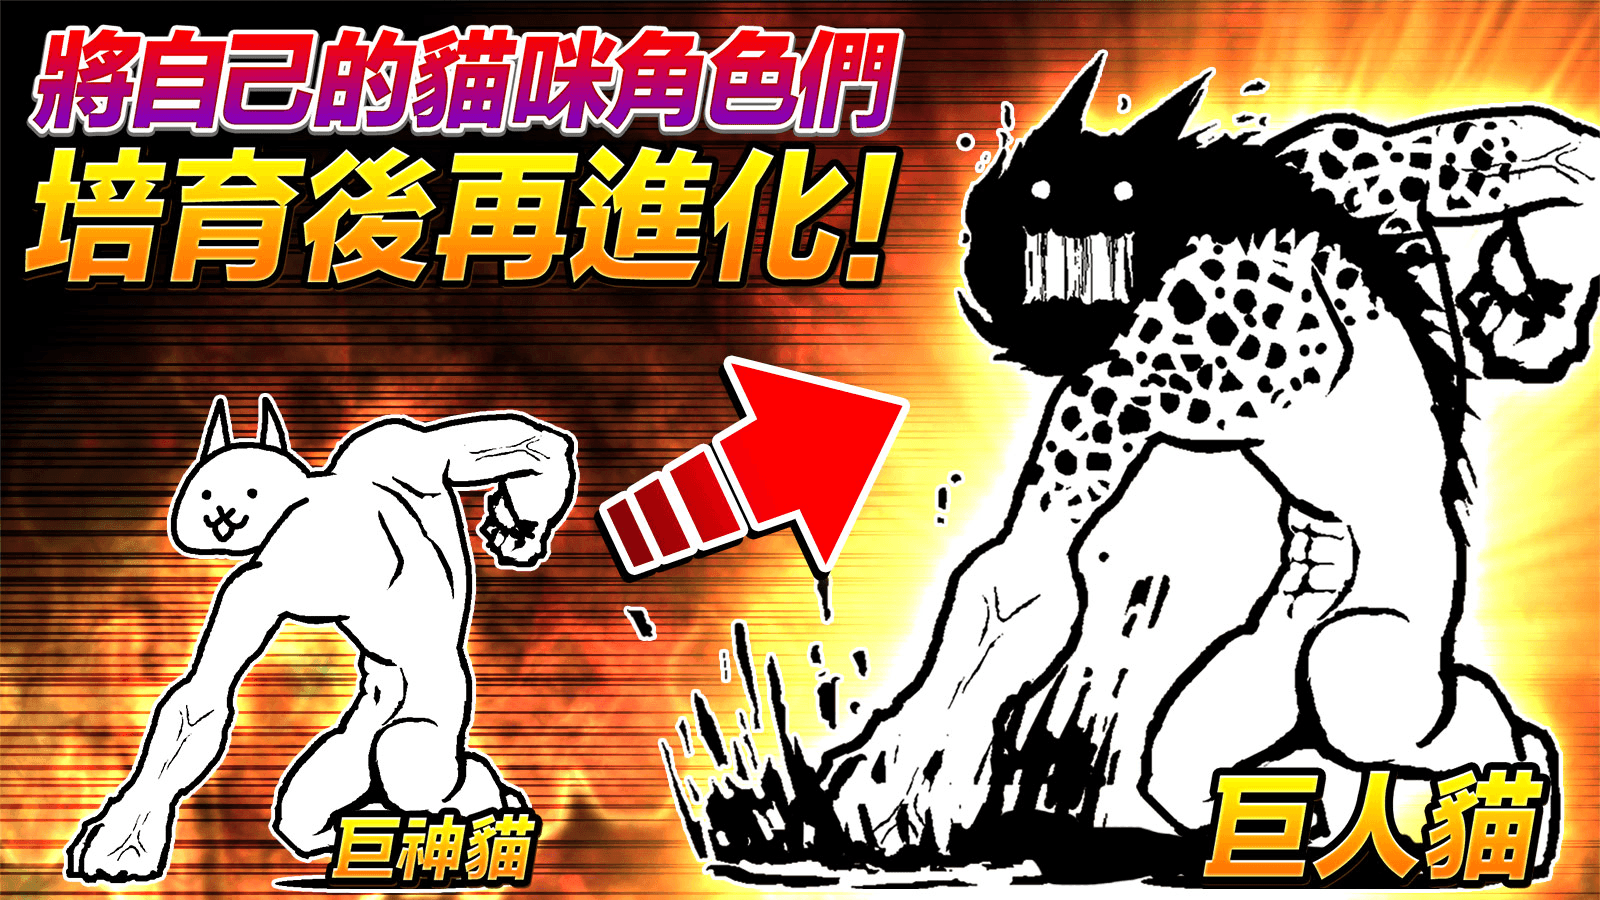 unnamed 3 - 【修改版】貓咪大戰爭 11.3.0 無限貓罐頭